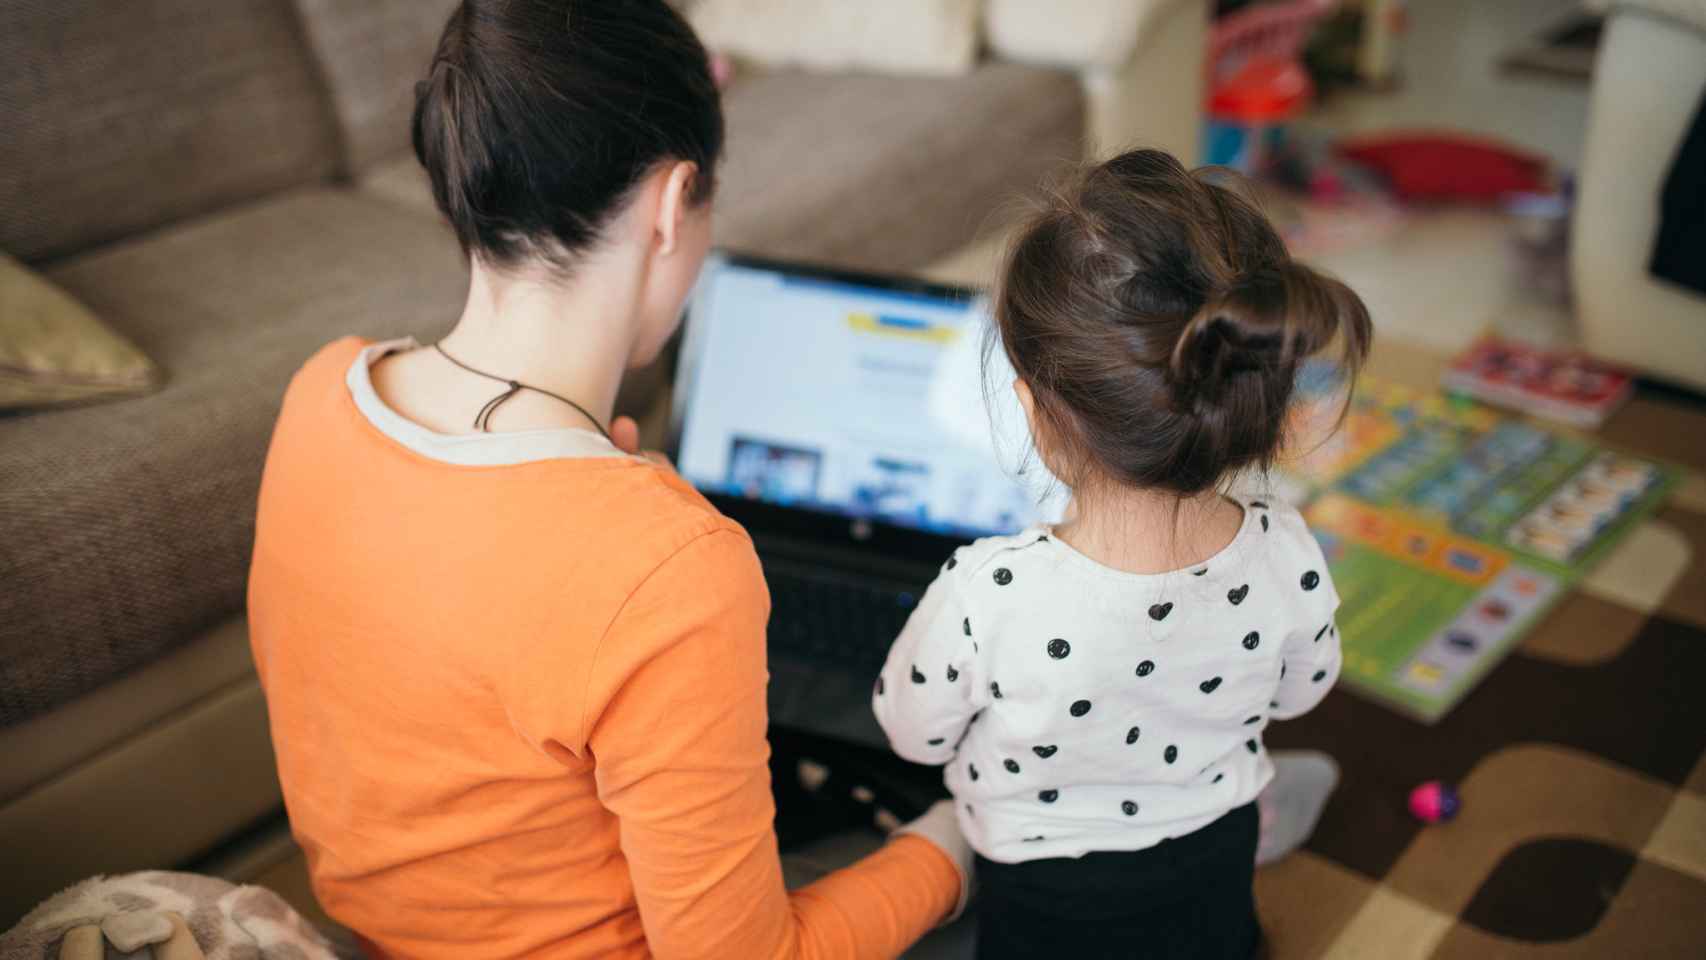 Una madre enseña a usar el ordenador a su hija / FLICKR